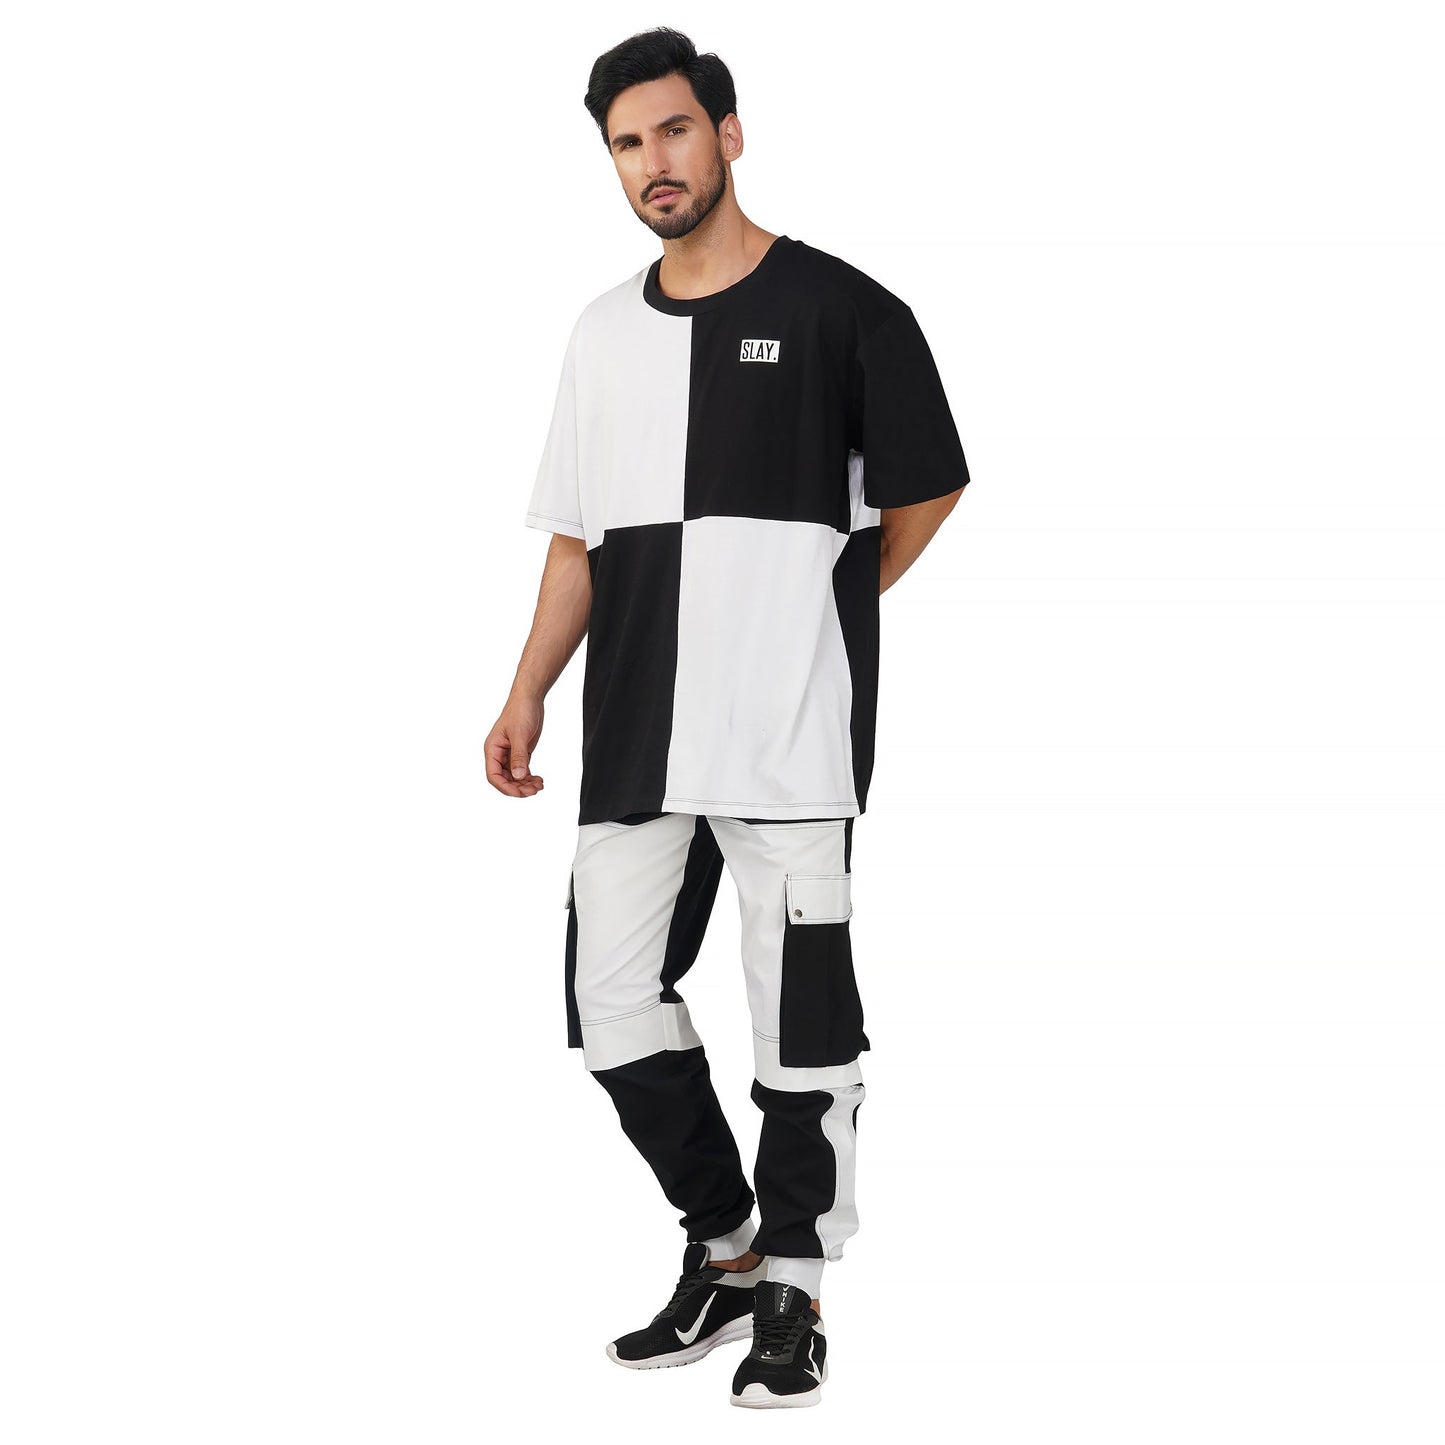 SLAY. Men's Colorblock Oversized Black & White T-shirt